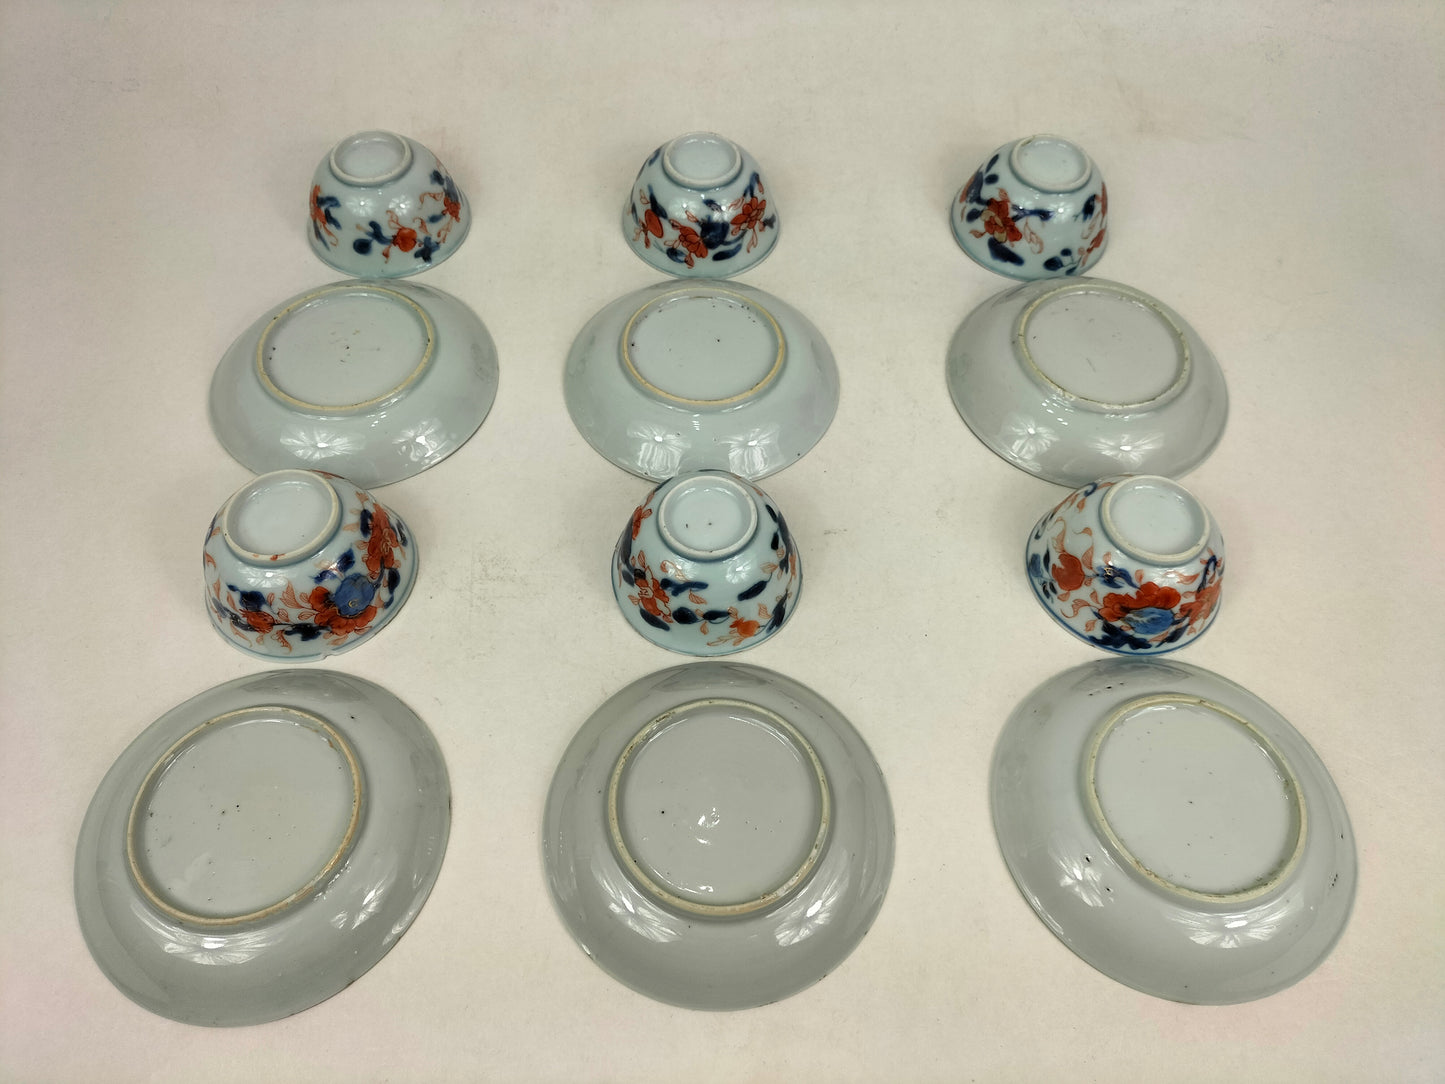 مجموعة مكونة من 6 فناجين شاي وصحون إيماري عتيقة // أسرة تشينغ - كانغشي - القرن الثامن عشر